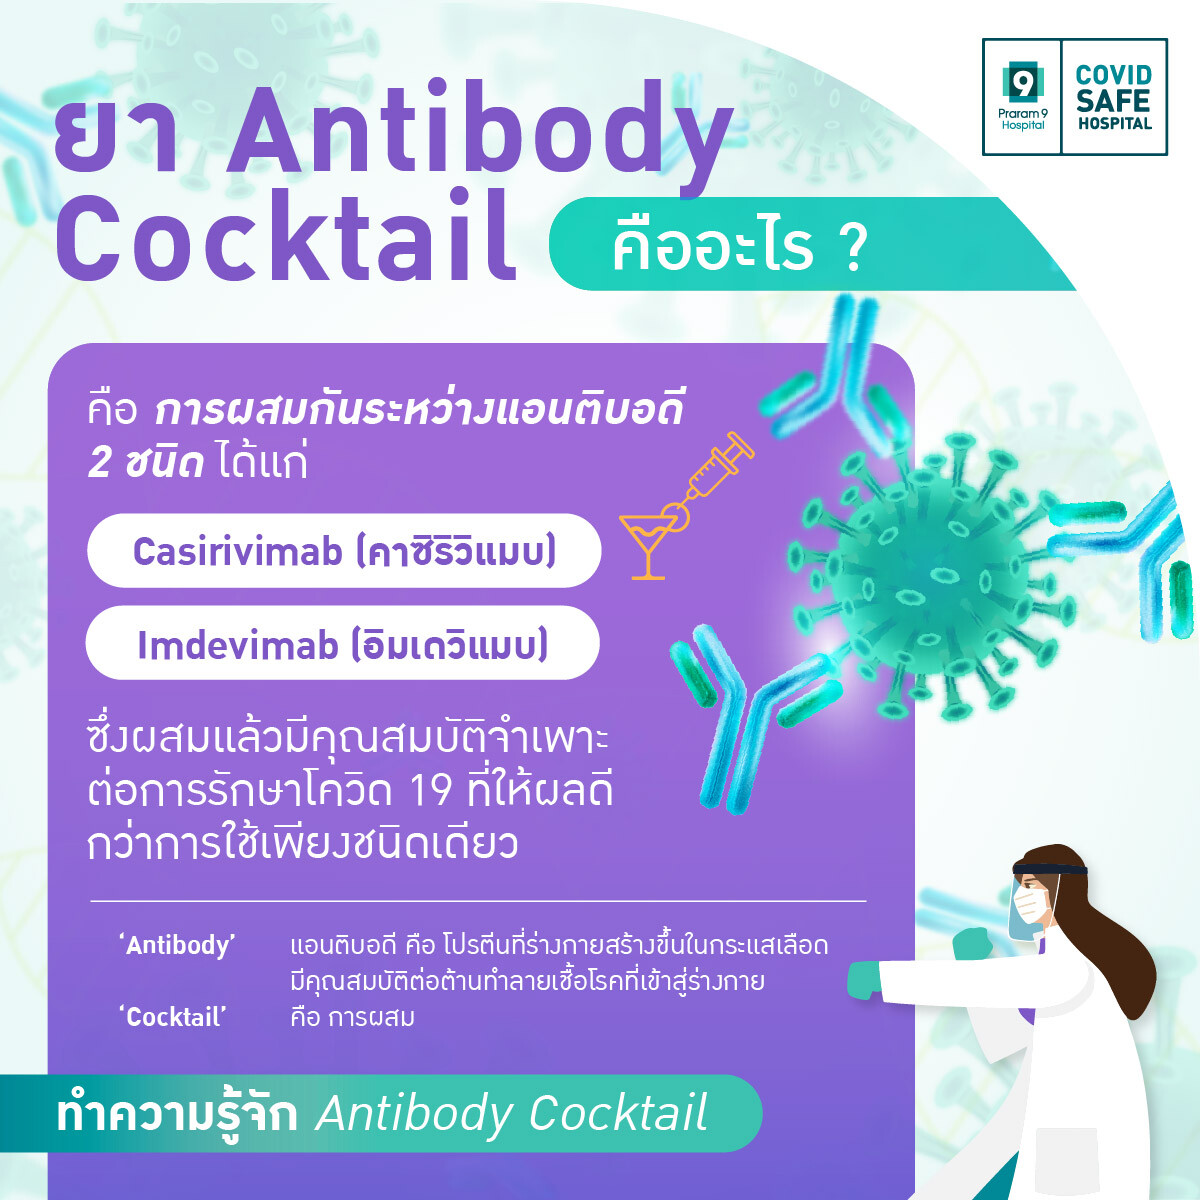 Antibody Cocktail ยารักษา COVID-19 ความหวังใหม่กับการพลิกฟื้นวิกฤตโรคระบาด